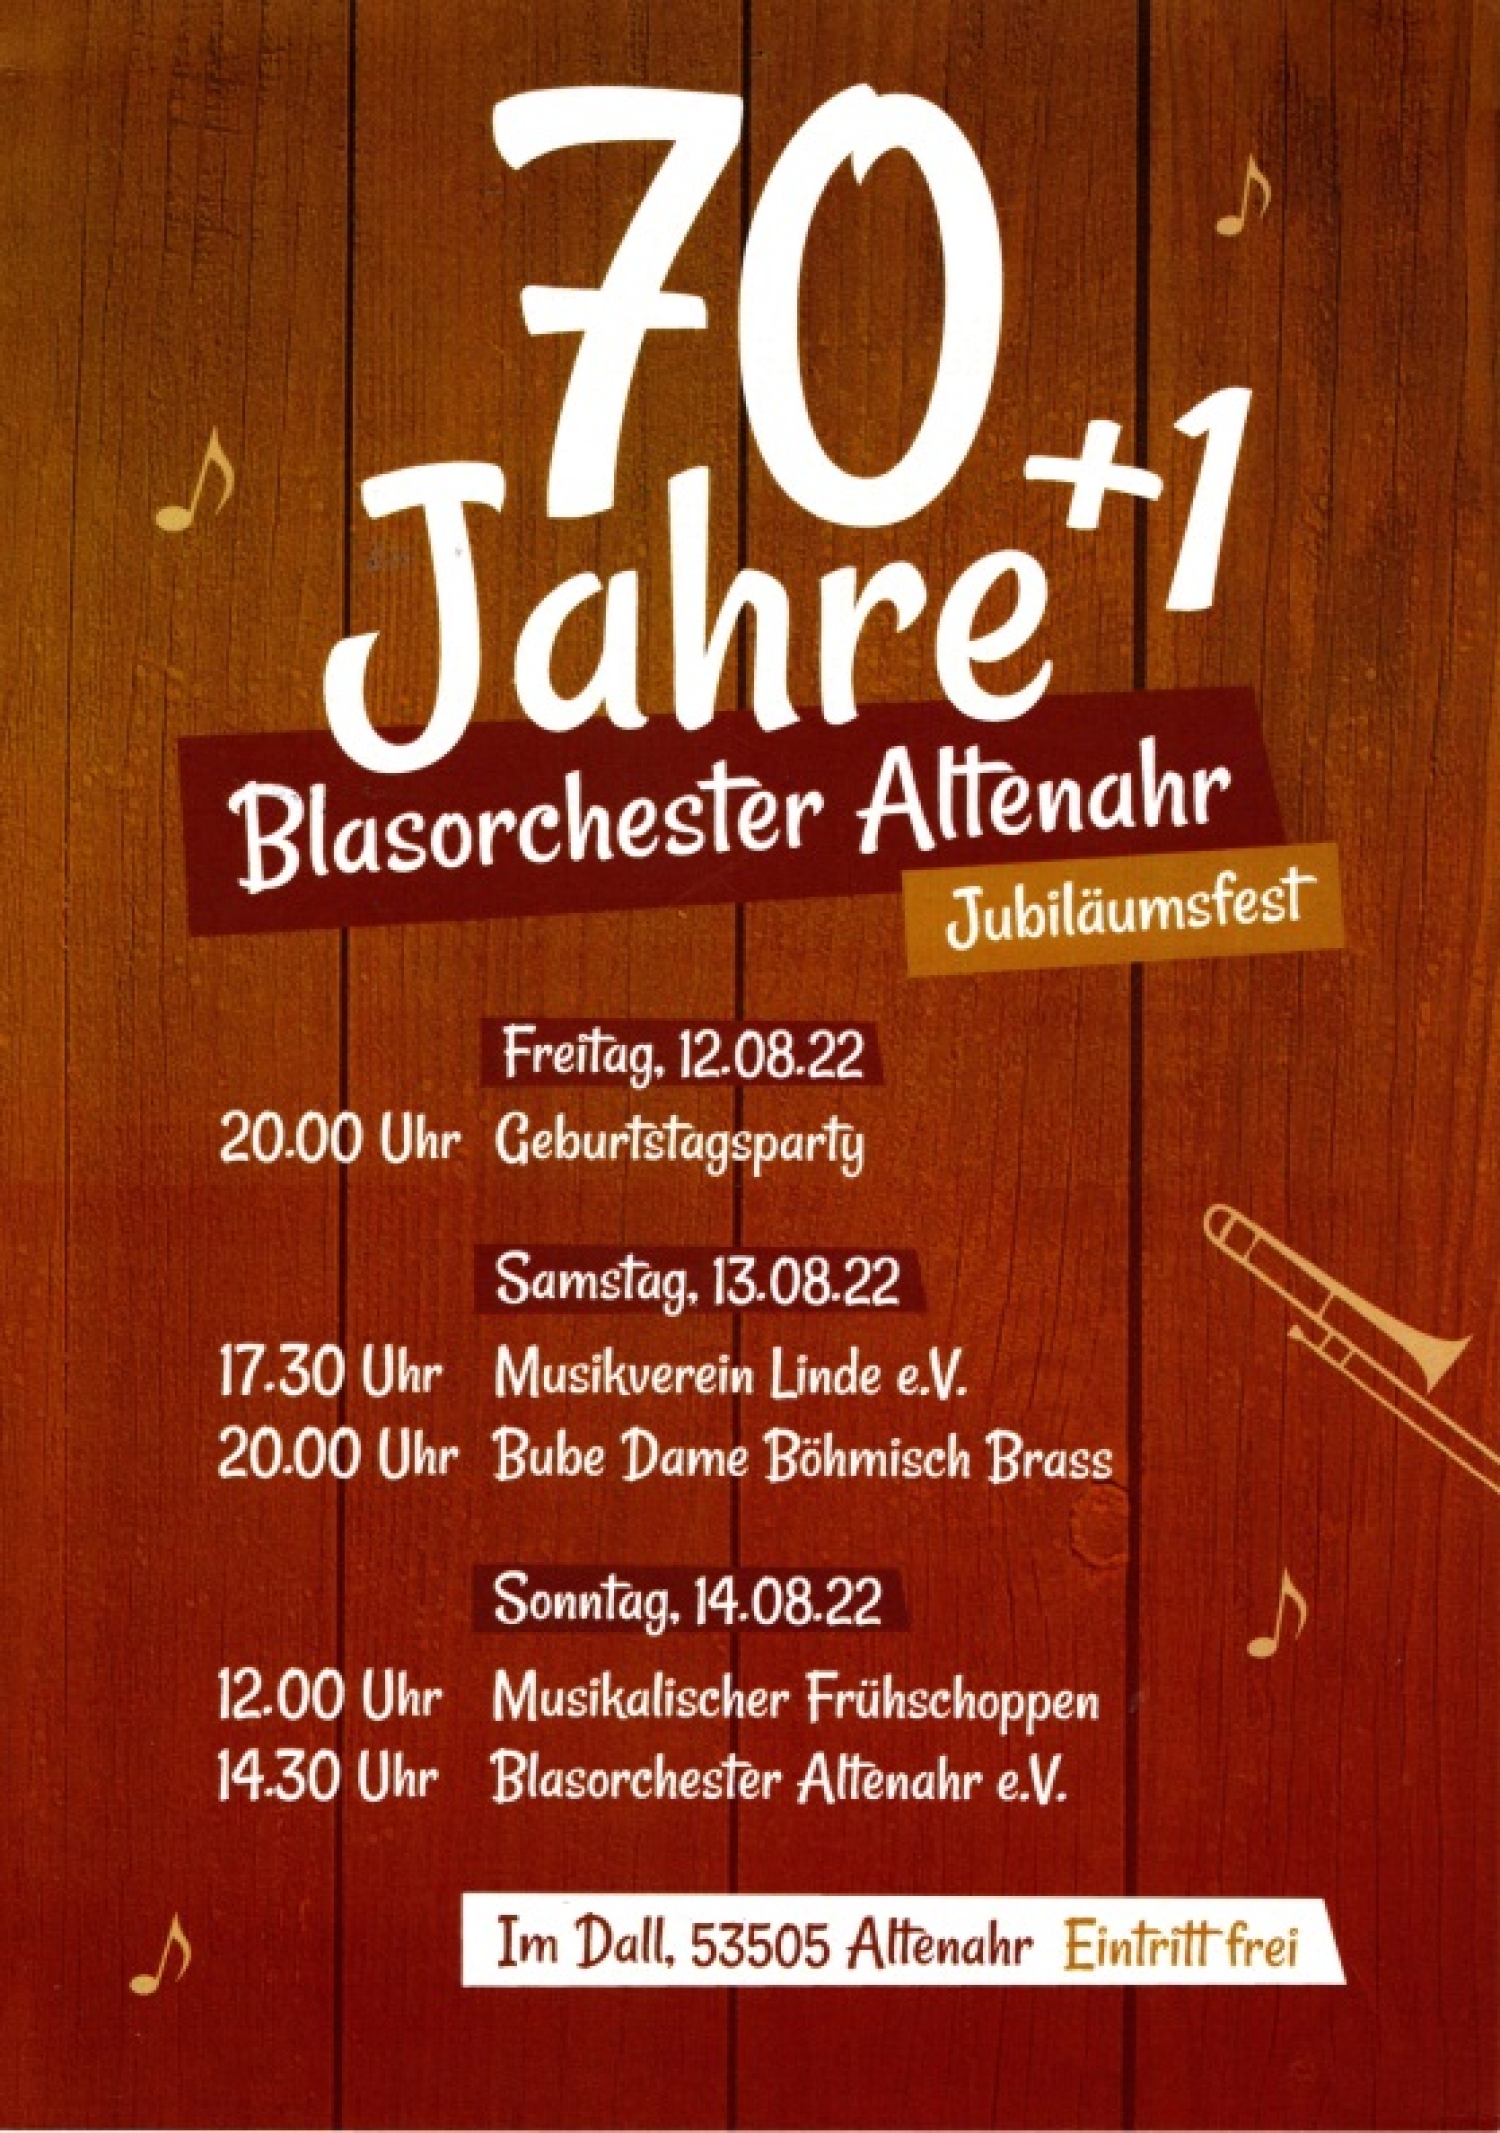 70 + 1 Jahre Blasorchester Altenahr - Jubiläumsfest